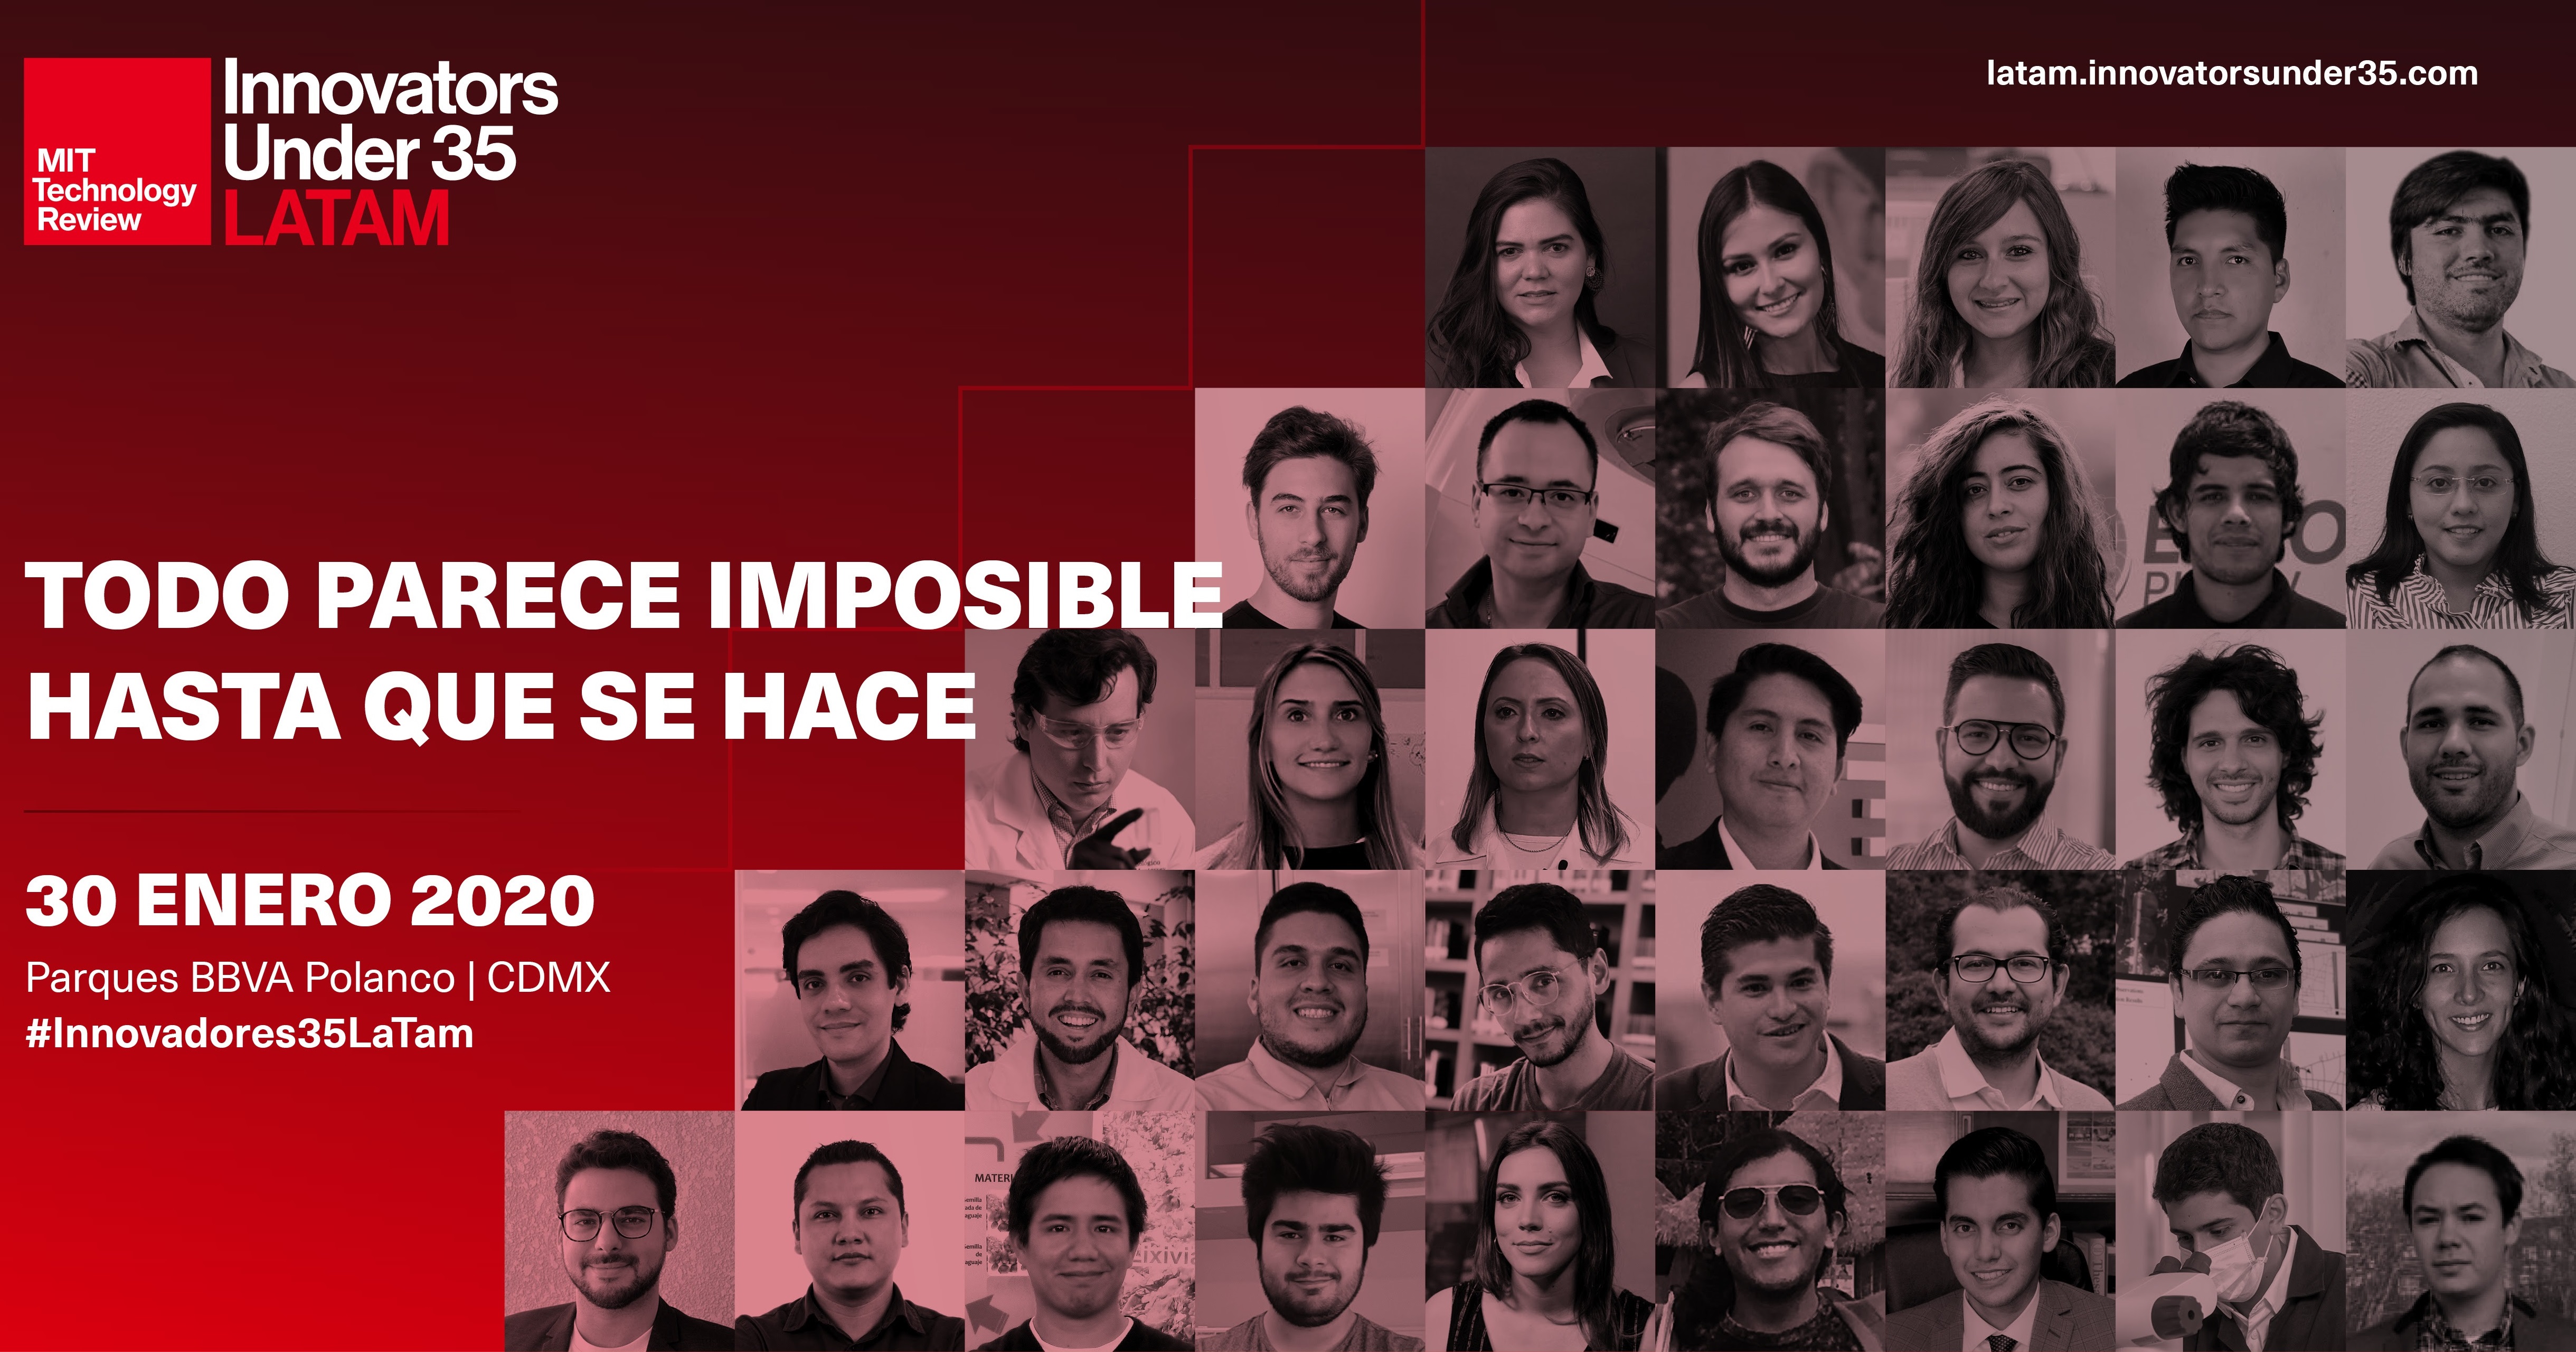 8 mexicanos entre los 35 latinoamericanos más innovadores: MIT